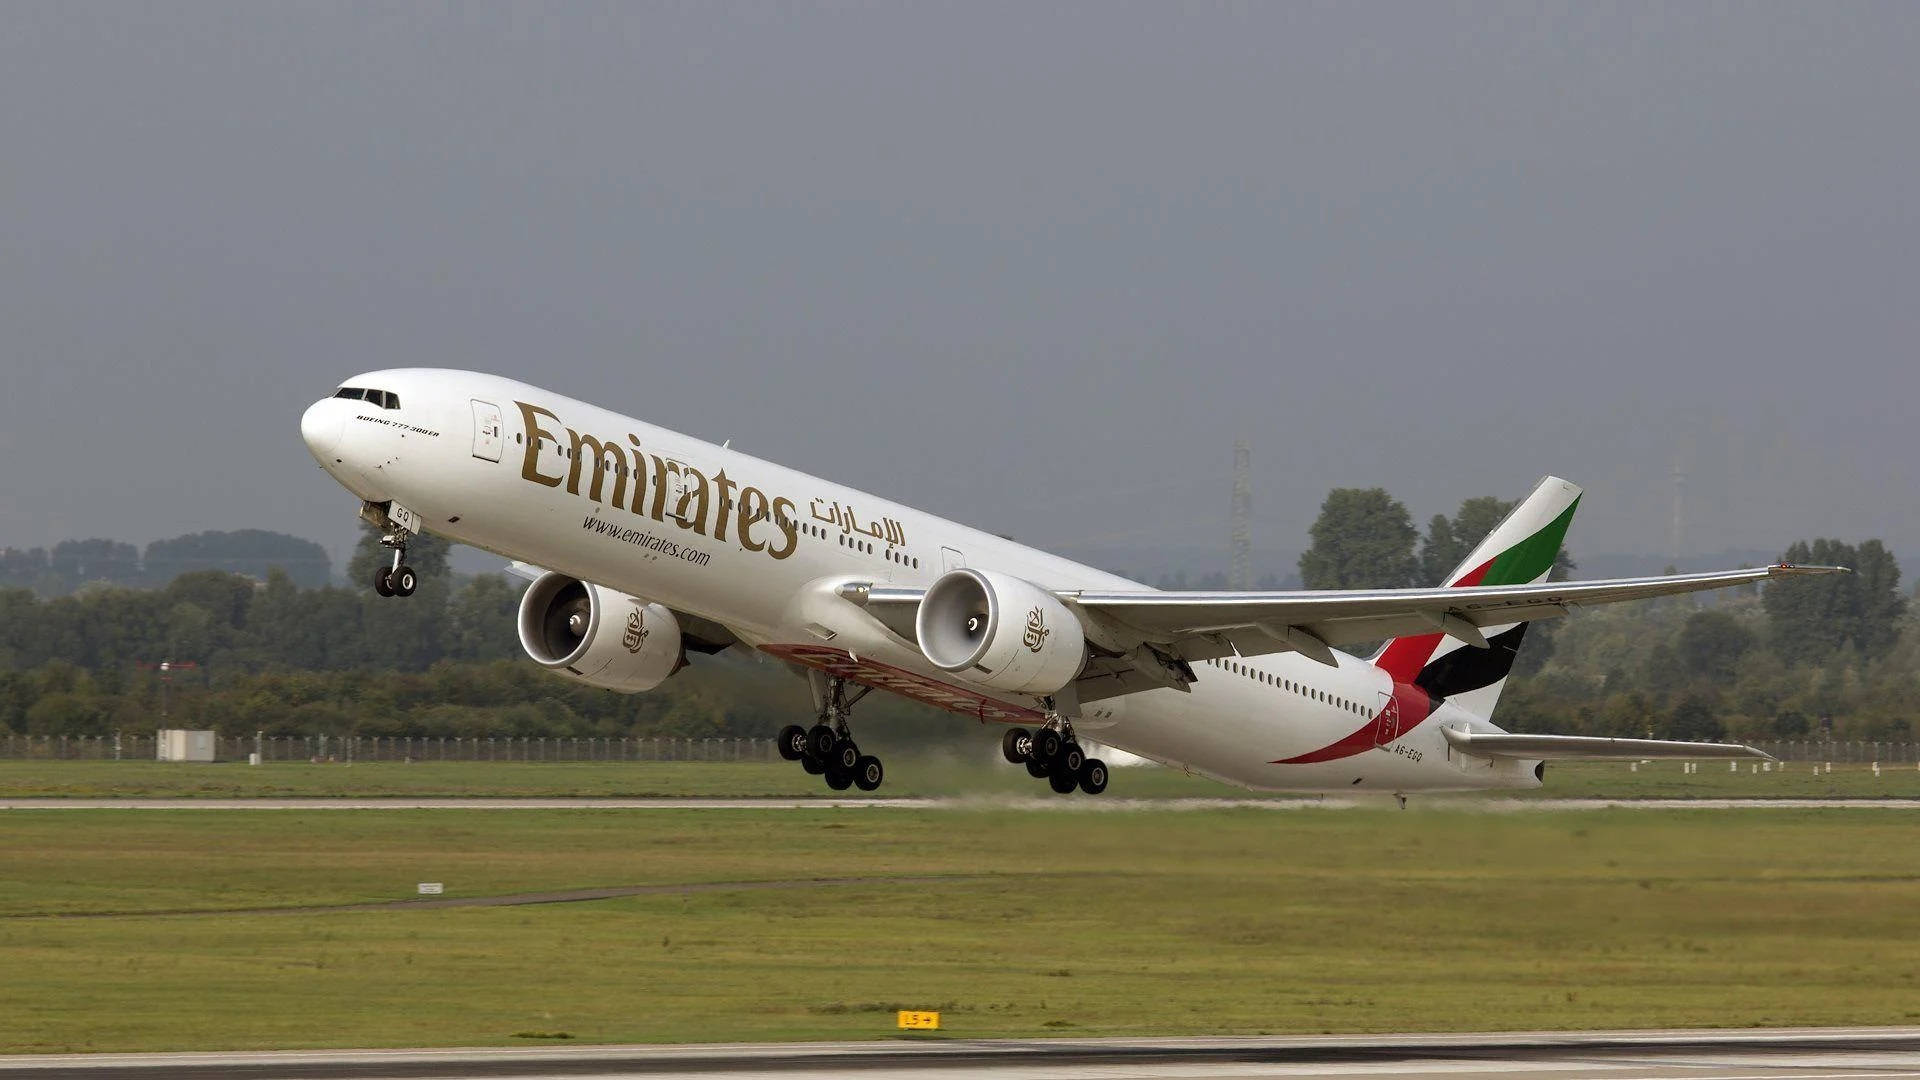 Emiratesairbus A380 All'aeroporto Di Düsseldorf. Sfondo